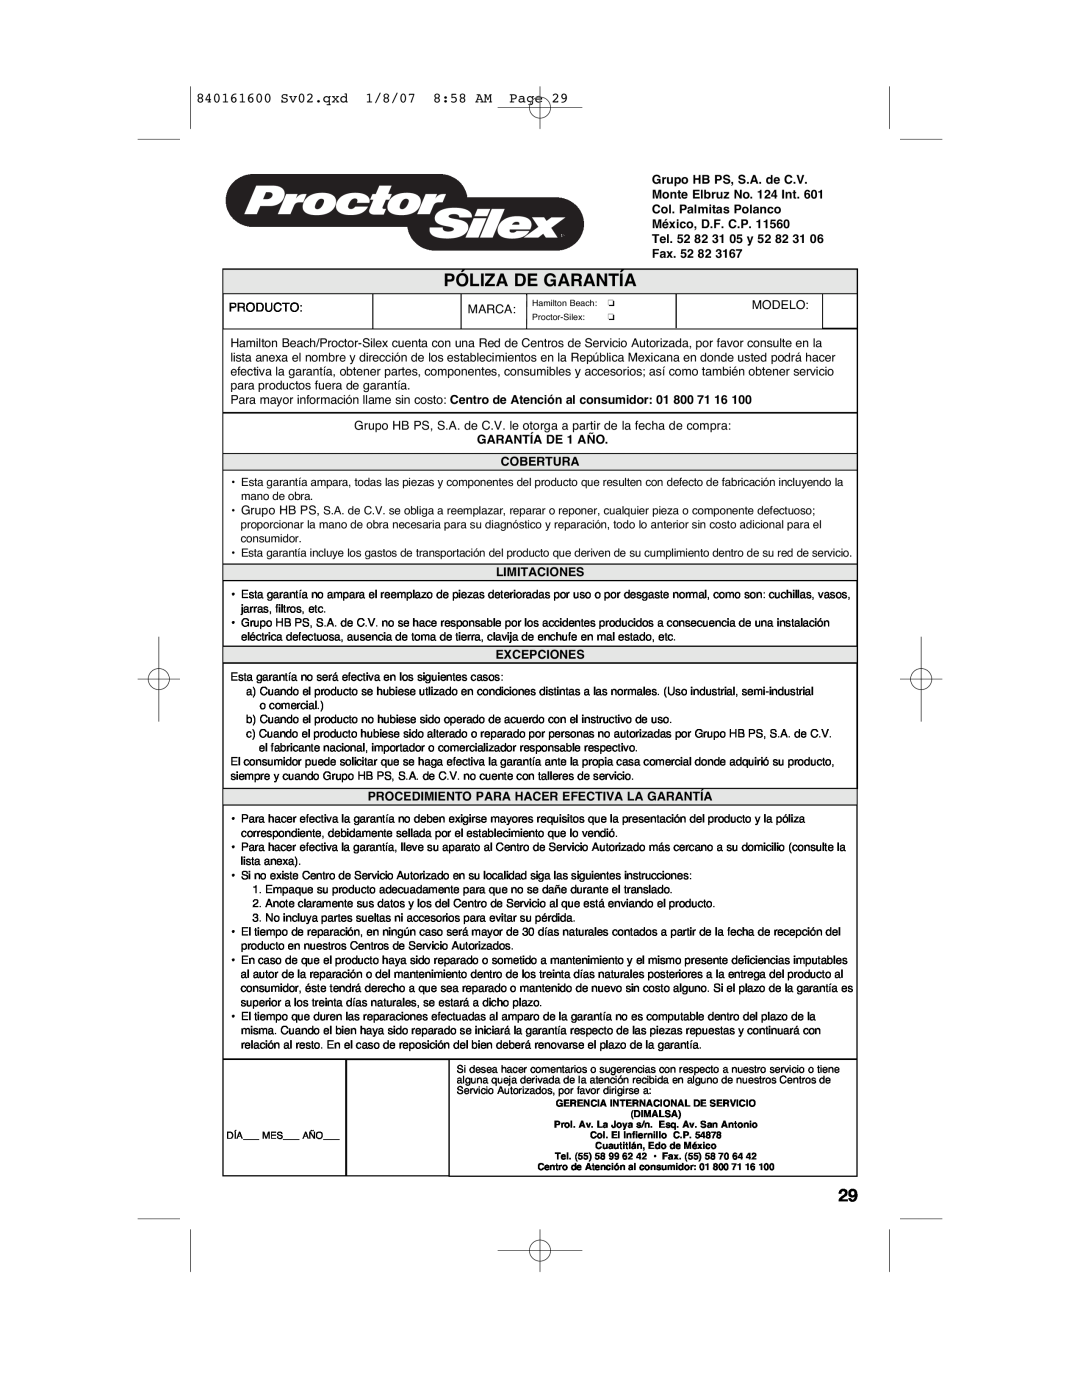 Proctor-Silex Póliza De Garantía, 840161600 Sv02.qxd 1/8/07 8 58 AM Page, Grupo HB PS, S.A. de C.V, Fax, Limitaciones 